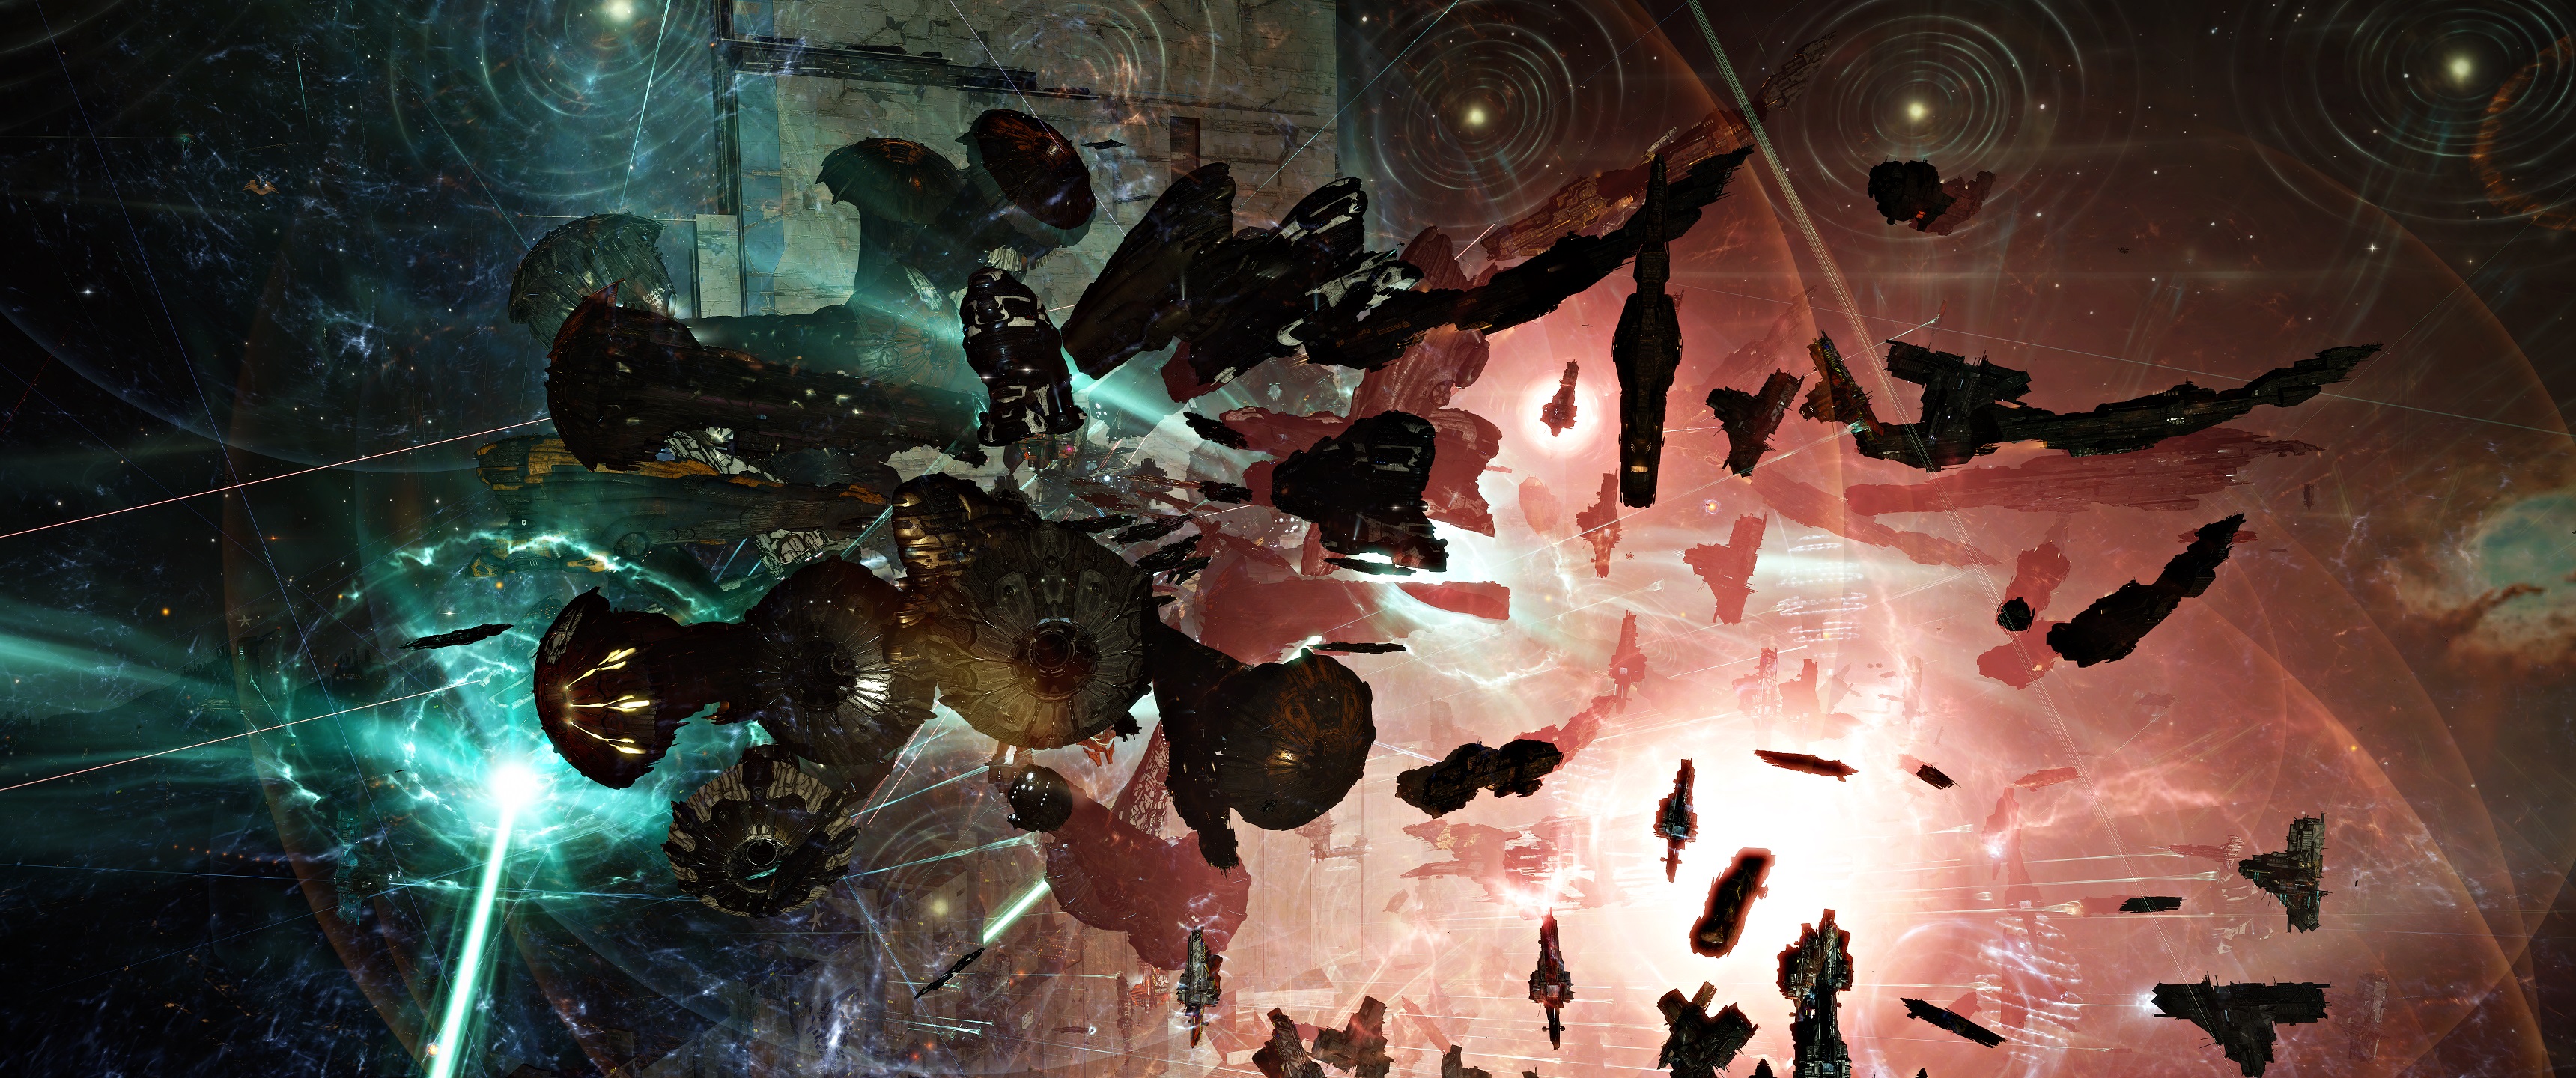 宇宙開拓MMO『EVE Online』で再び“史上最大のプレイヤー間戦争”が勃発。6500名以上のプレイヤーが同時参加し、約14時間の攻防戦を展開_003